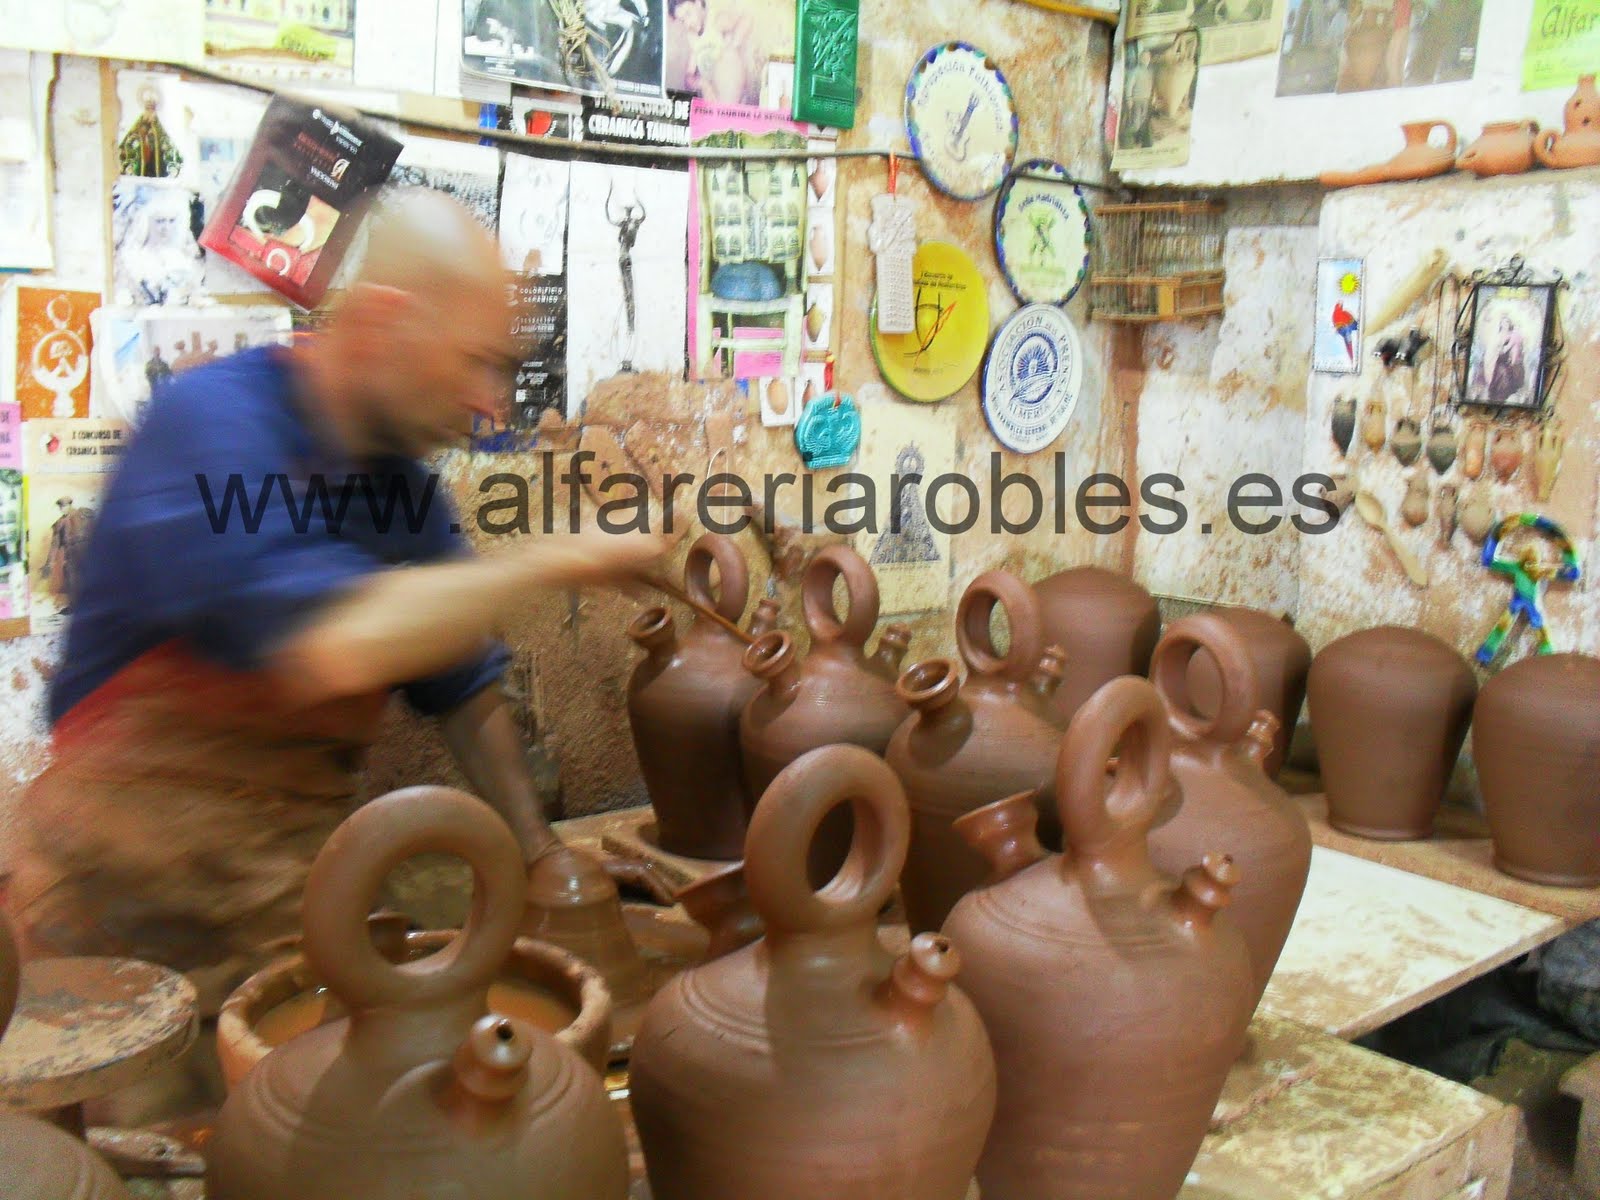 Alfarería - Cerámica Robles - Artesanía de Almeria: Botijo de Alfarería